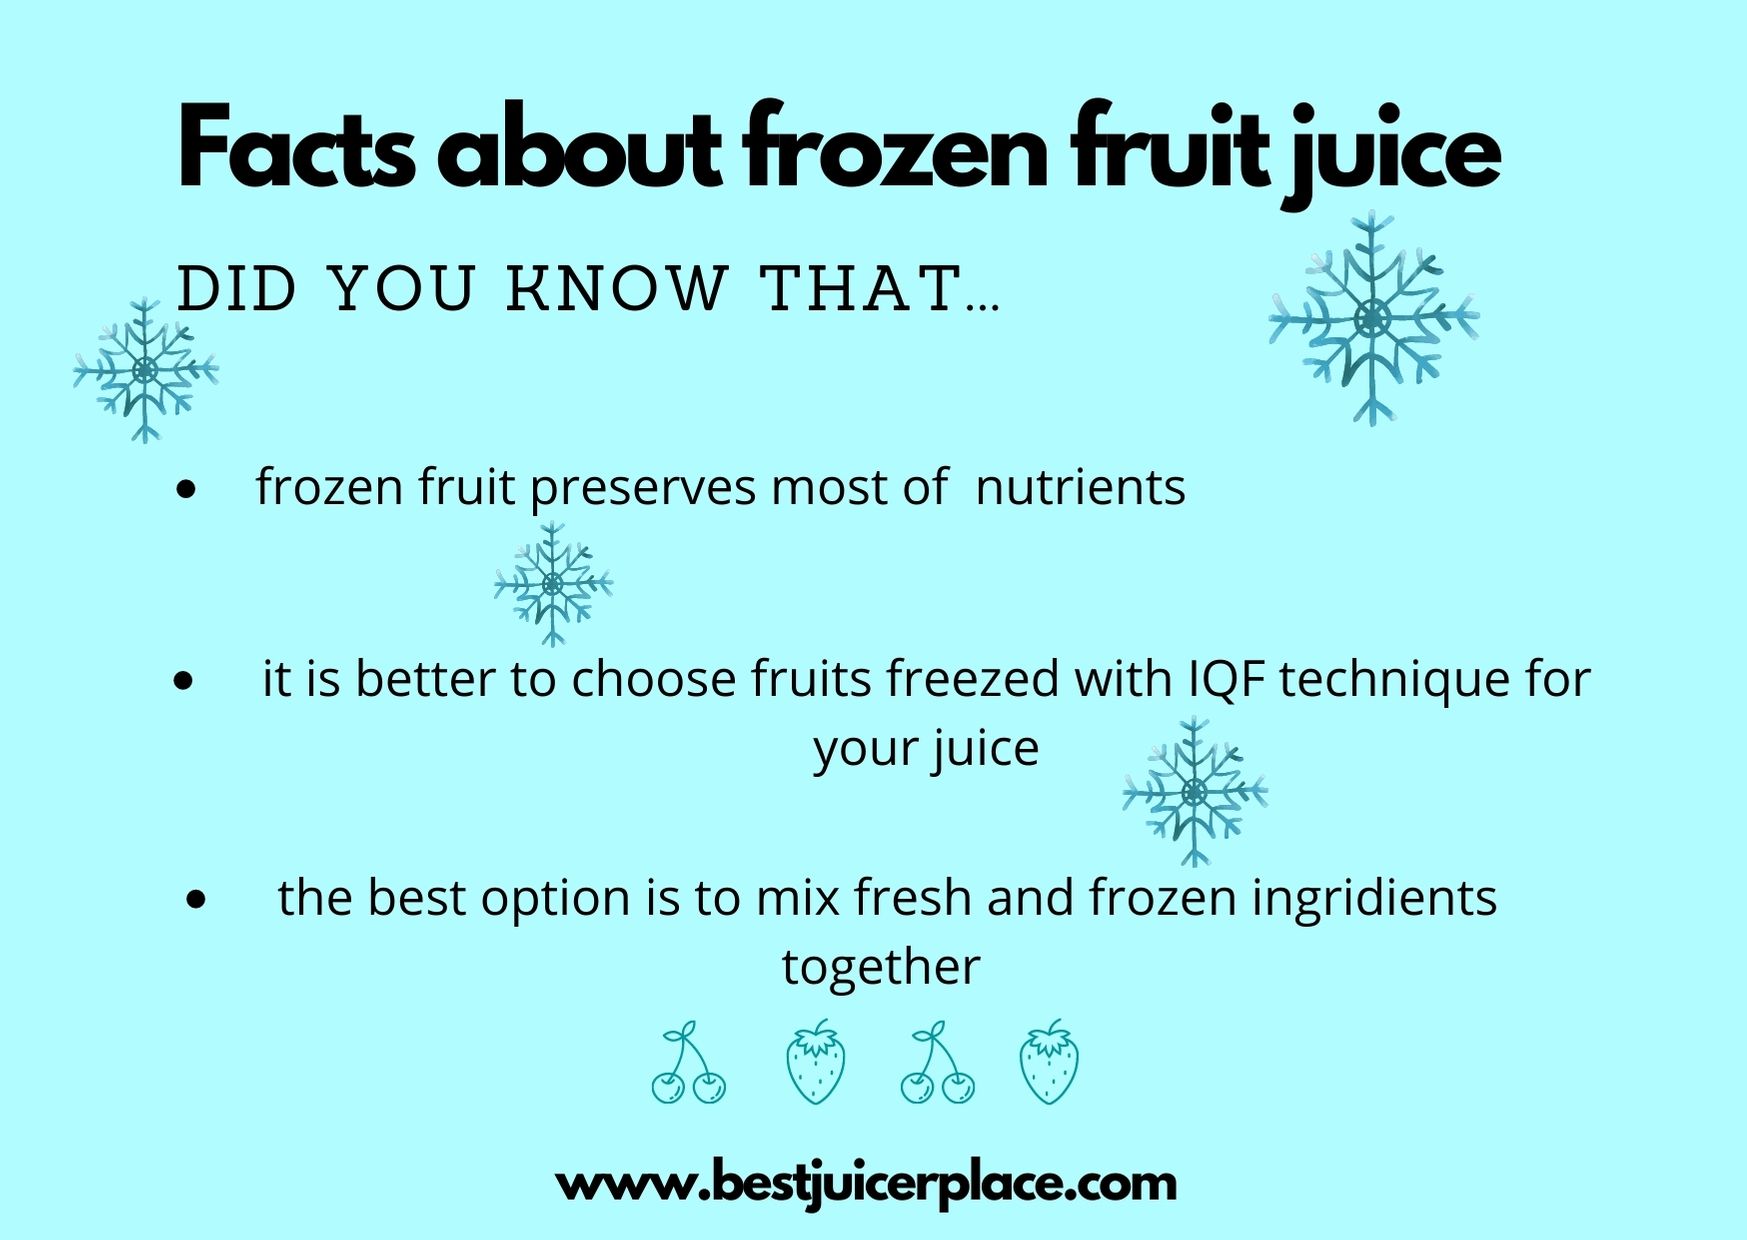 Facts about frozen fruit juice